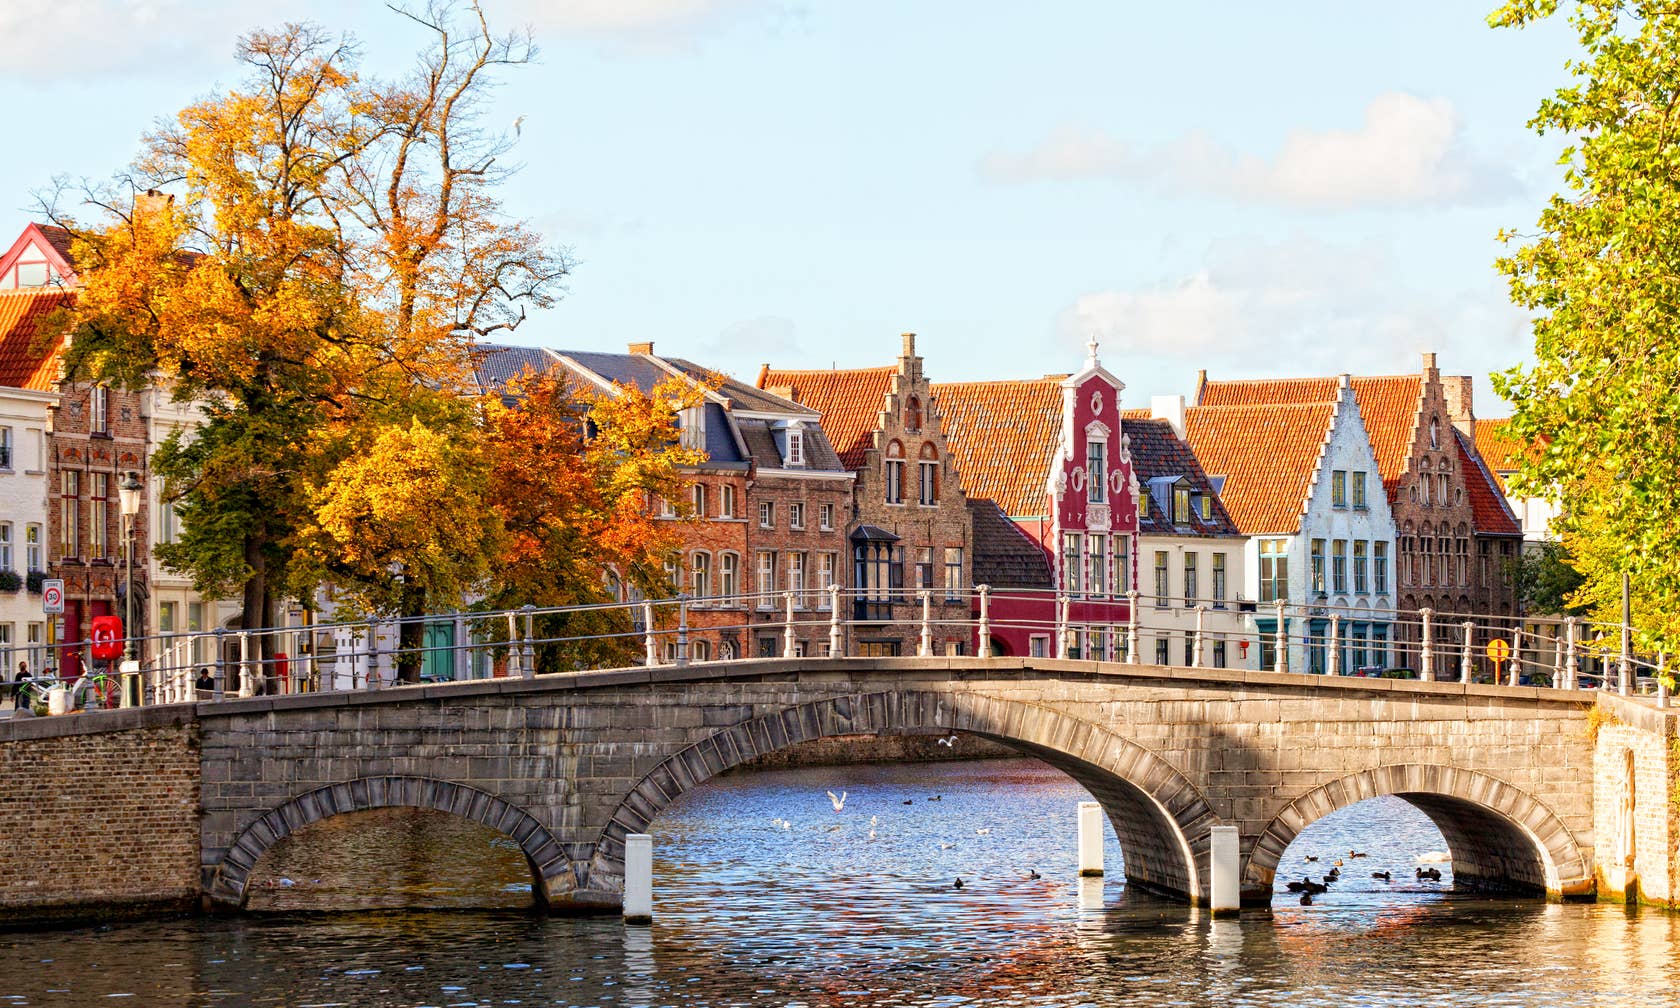 Bérbeadó nyaralók itt: Bruges